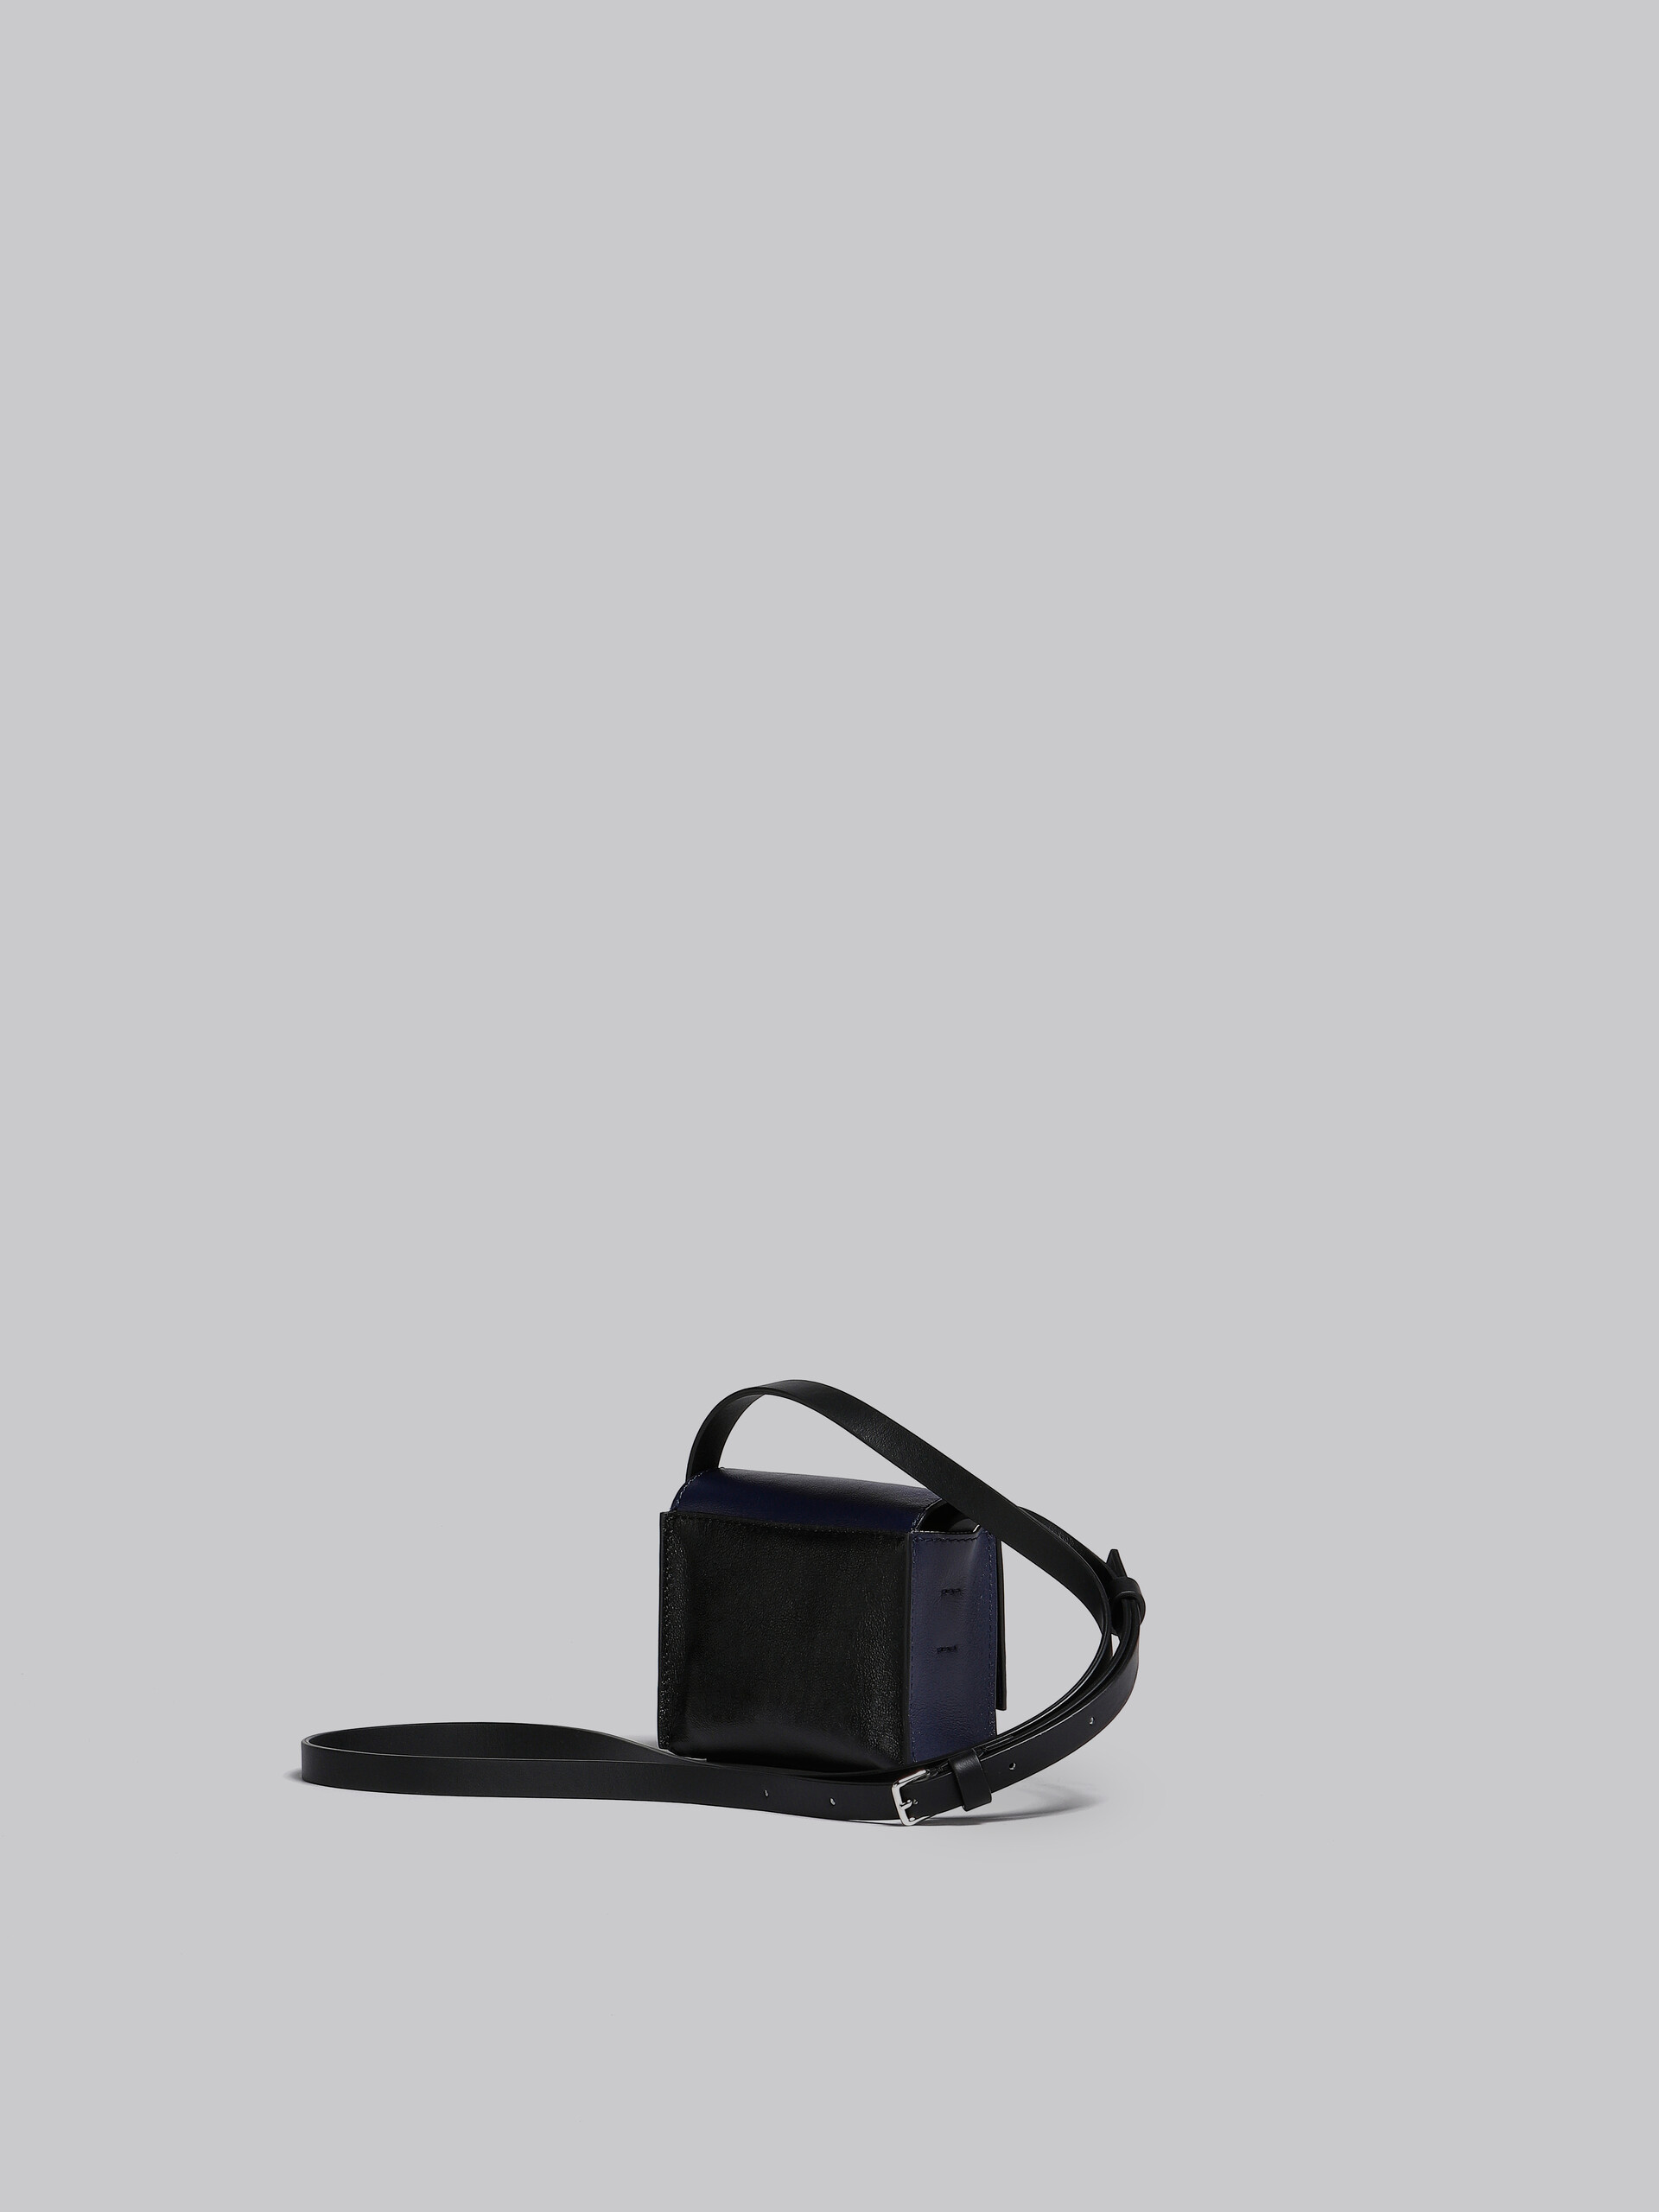 Blue and black leather crossbody bag - Shoulder Bag - Image 3